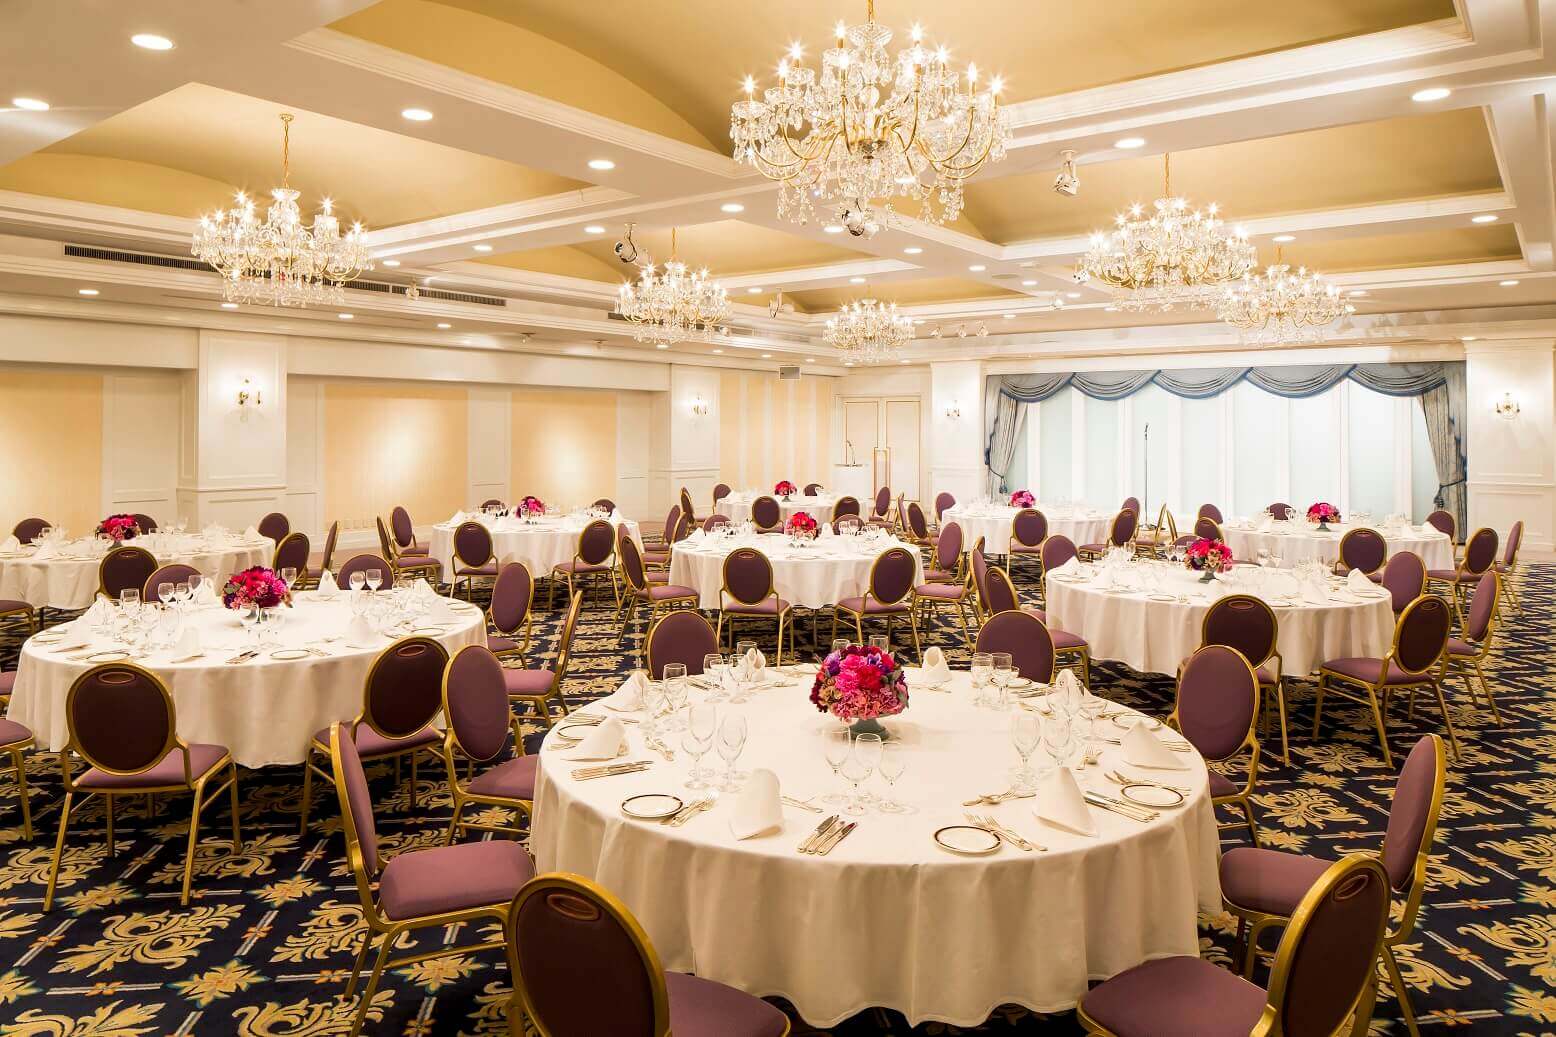 Wedding Hall | Party Venue Rental